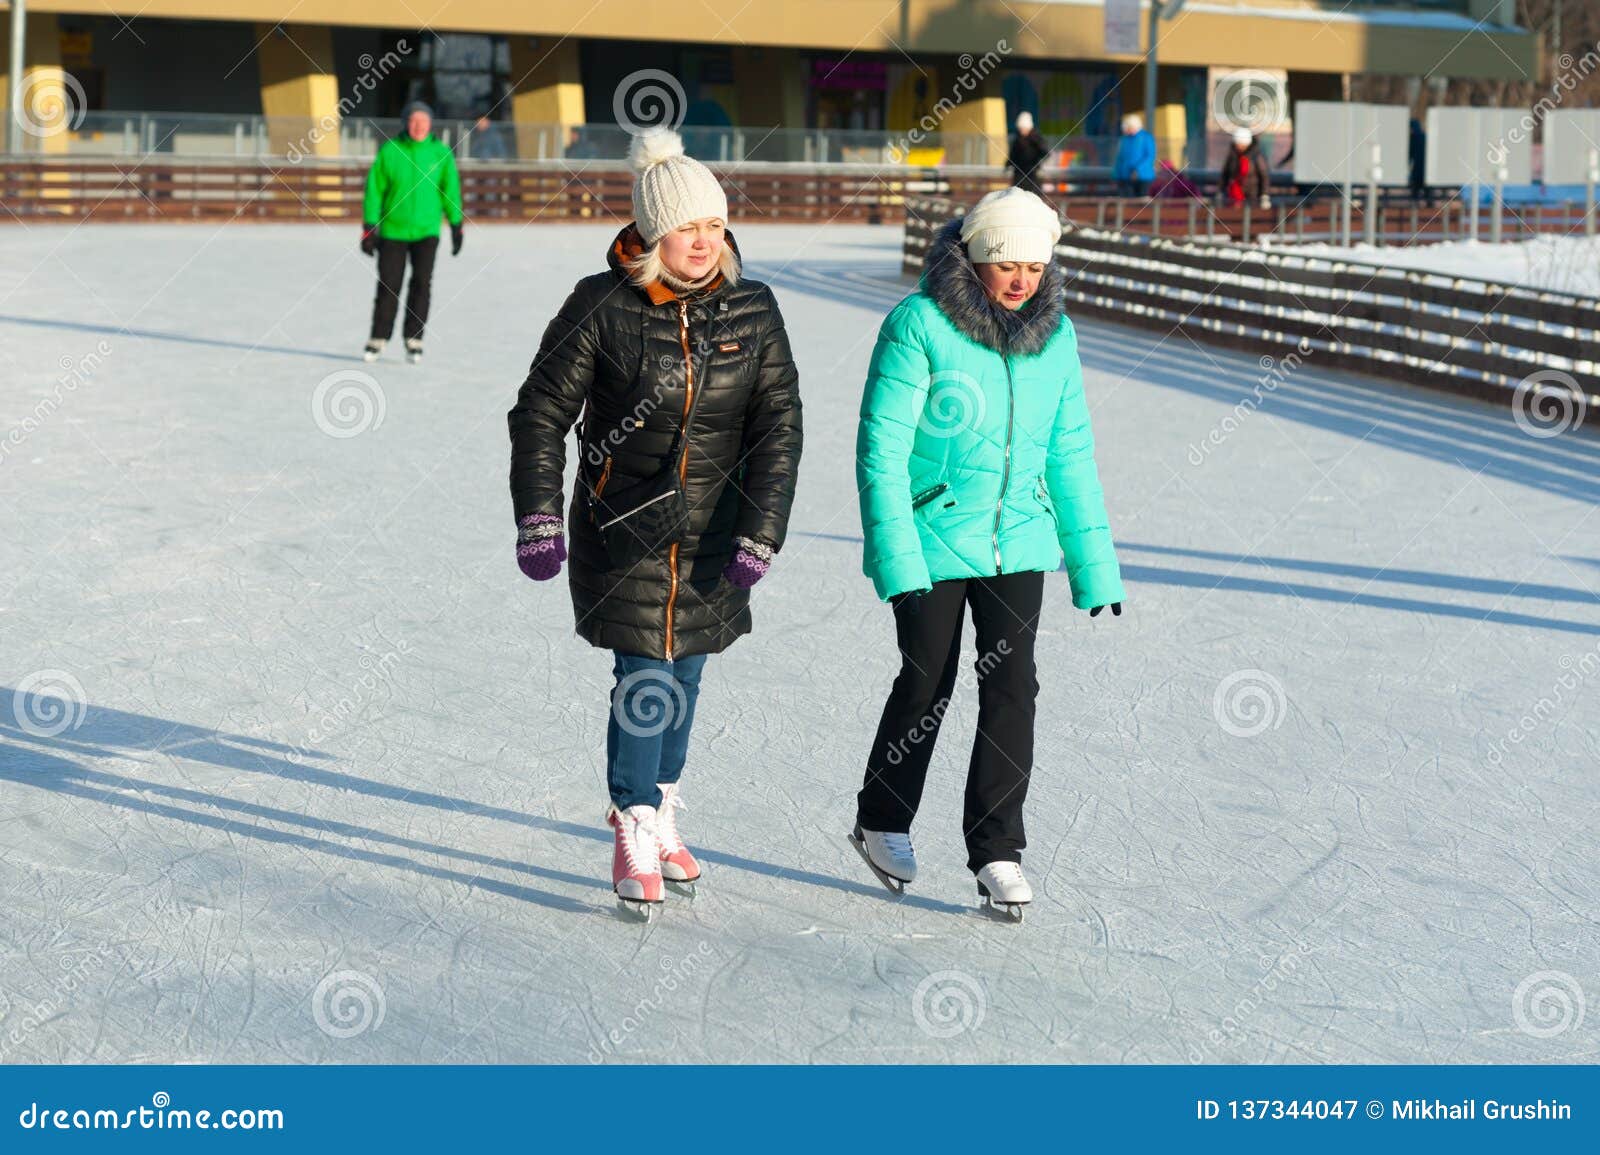 Zwei Frauen Eislauf22 01 2019